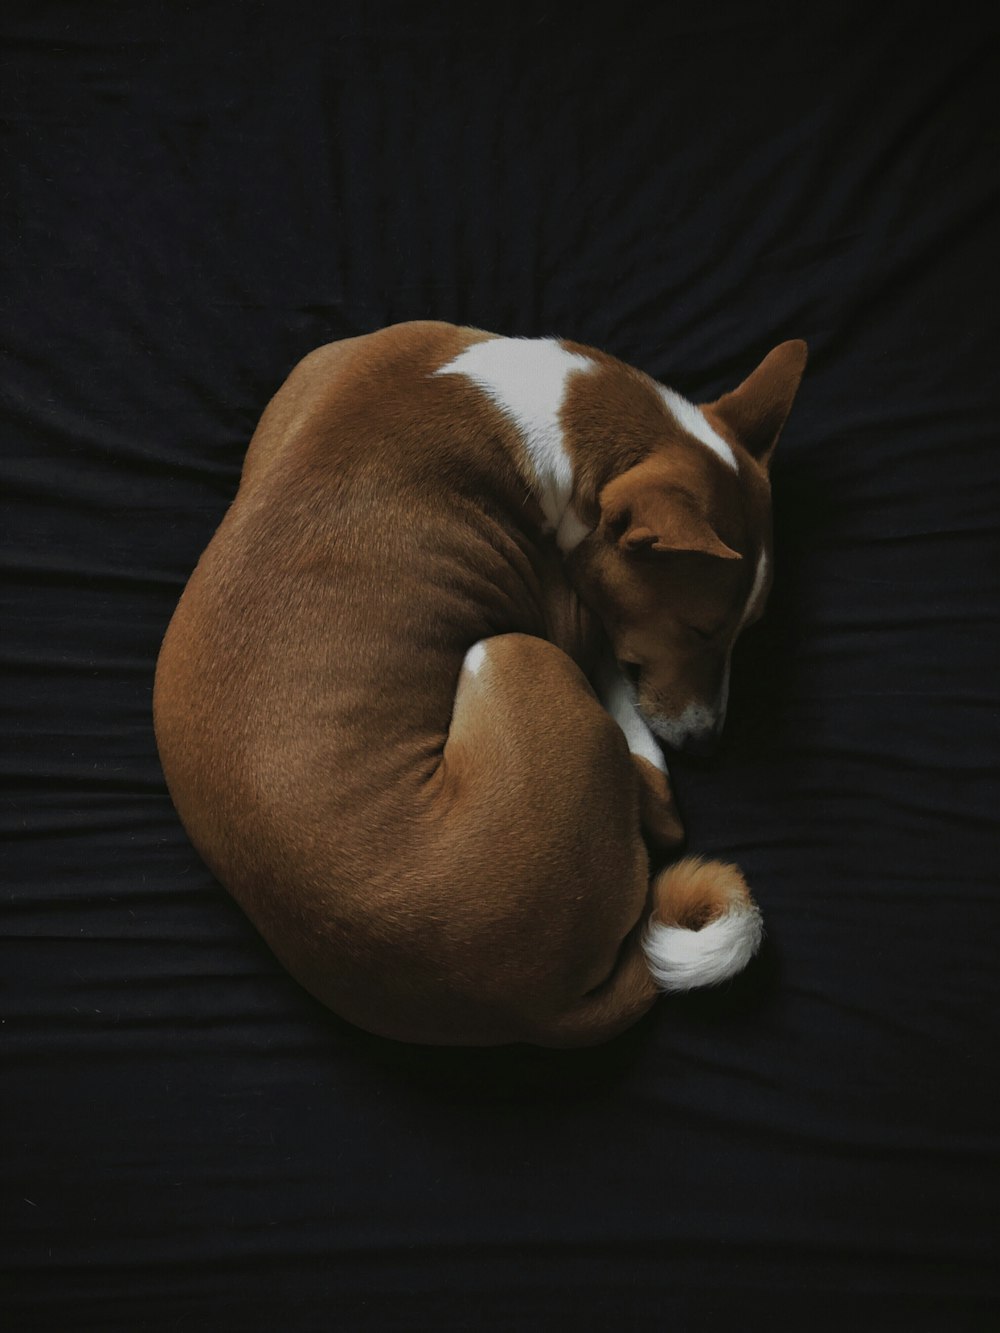 검은색 패브릭 시트에서 자고 있는 짧은 코팅된 흰색과 갈색 개